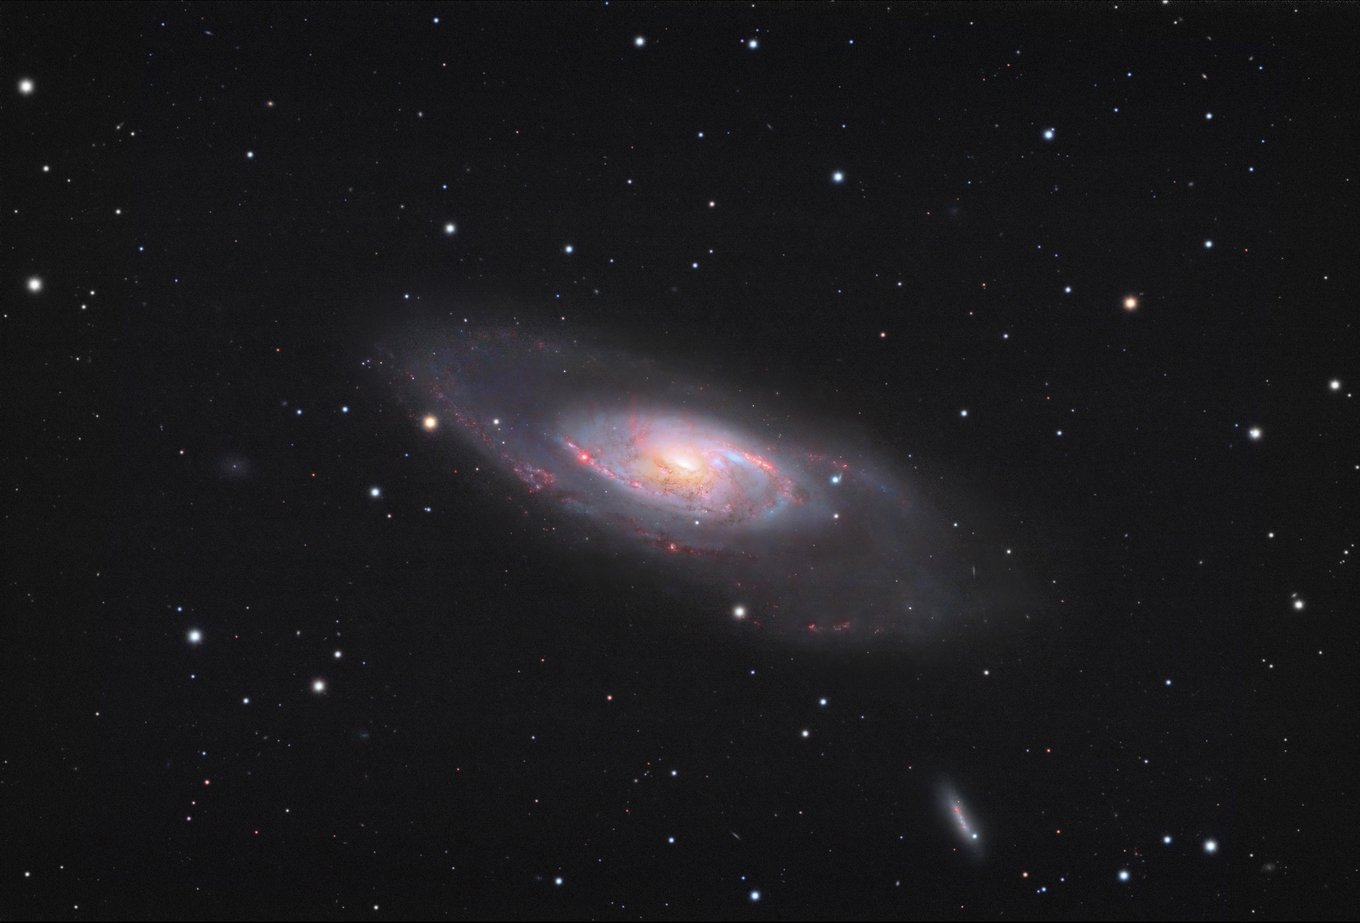 Messier 106